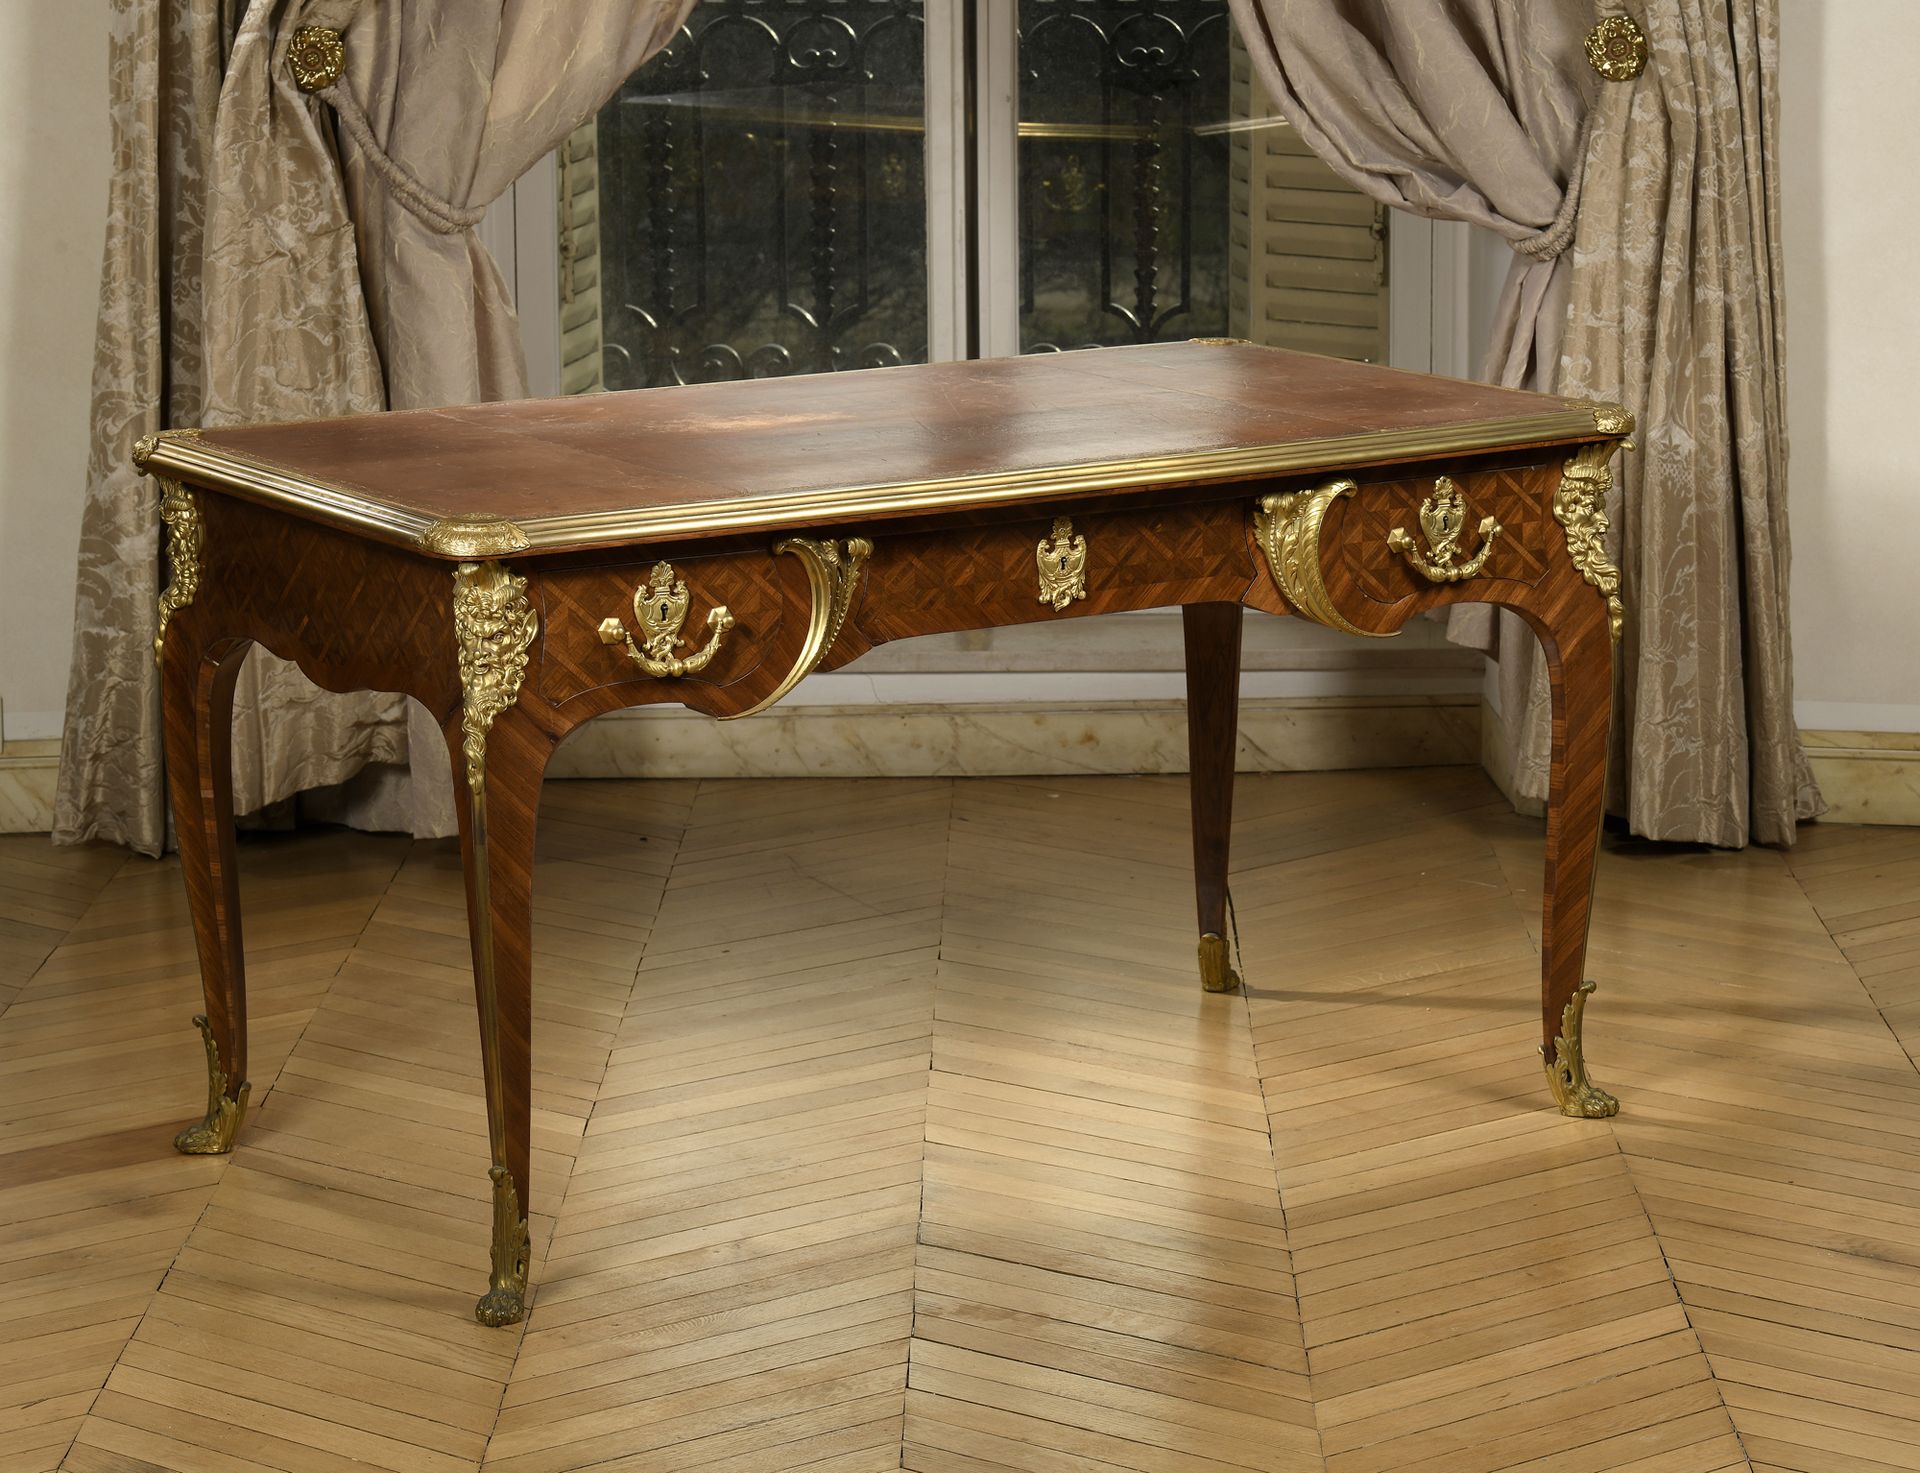 Null 三屉平桌，紫罗兰色和缎木饰面，镶嵌格子装饰。 
镀金棕色马可木桌面。弧形桌腿。丰富的鎏金铜饰。
路易十五风格。
78 x 140 x 80 厘米